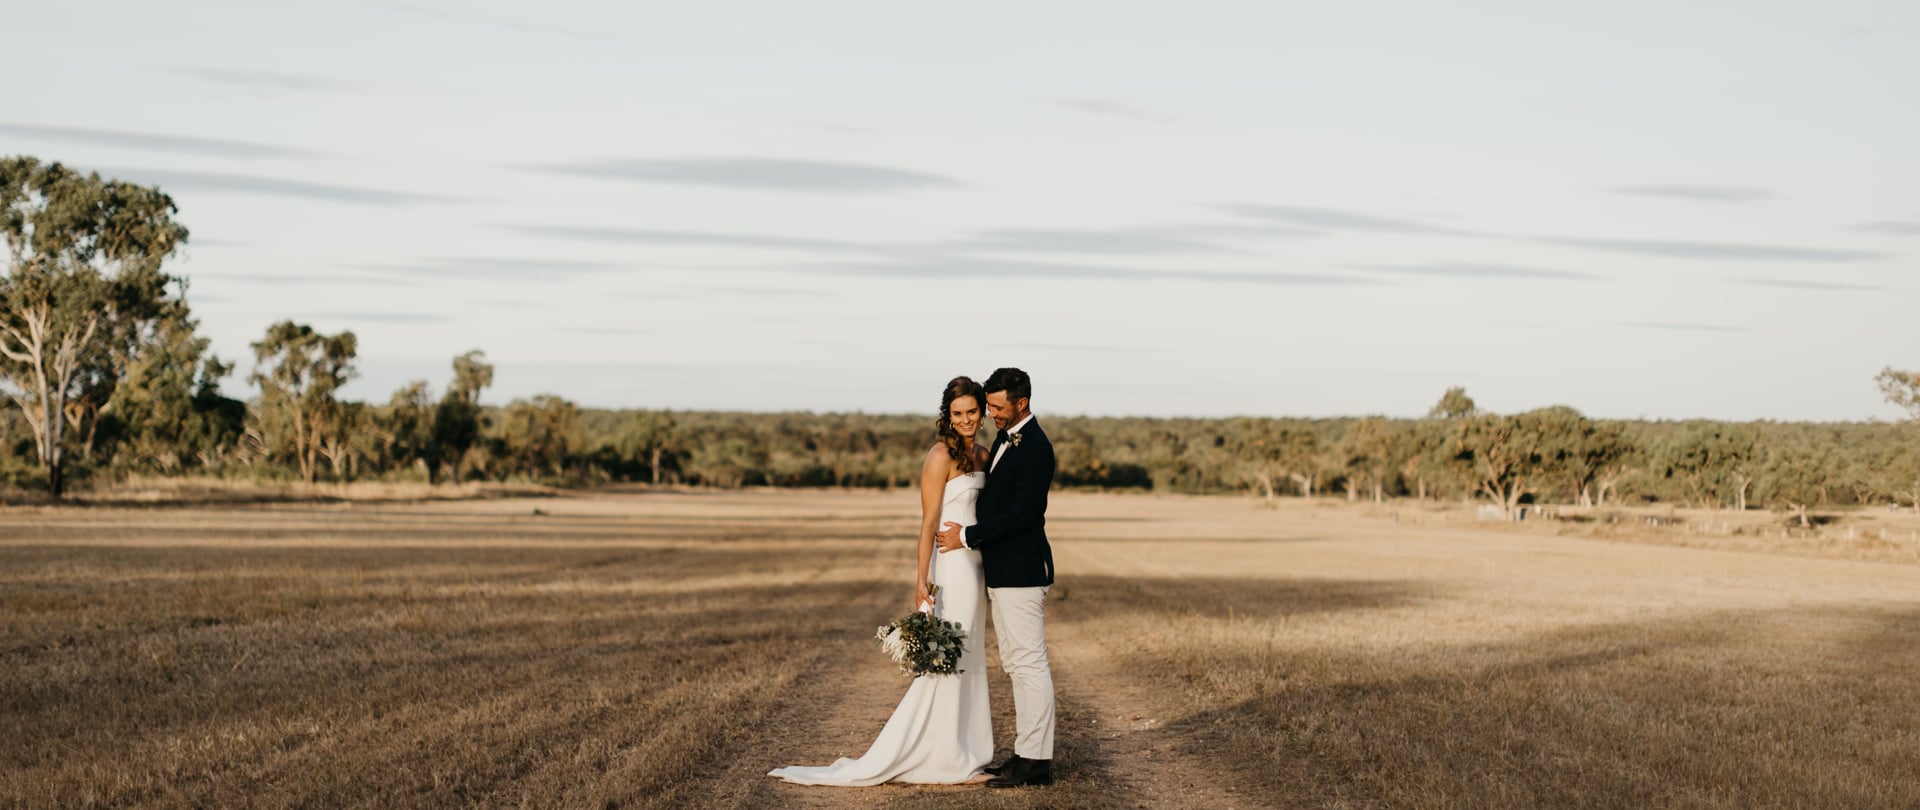 Ben & Bindi-Lee Wedding Video Filmed at Queensland, Australia